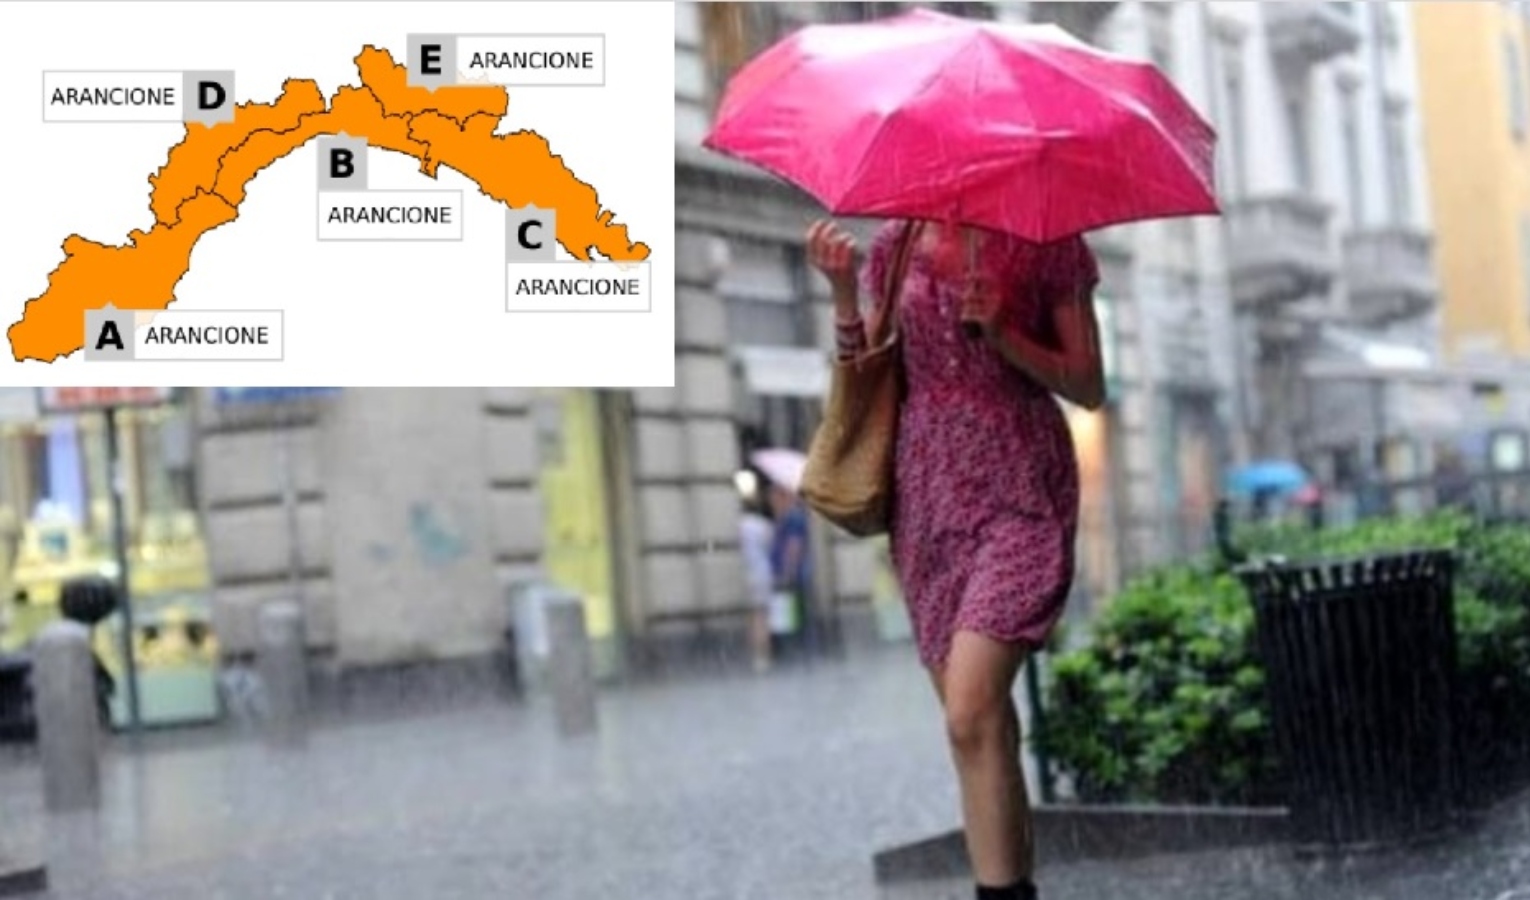 Allerta meteo, diramata l'arancione su tutta la Liguria dalle 22